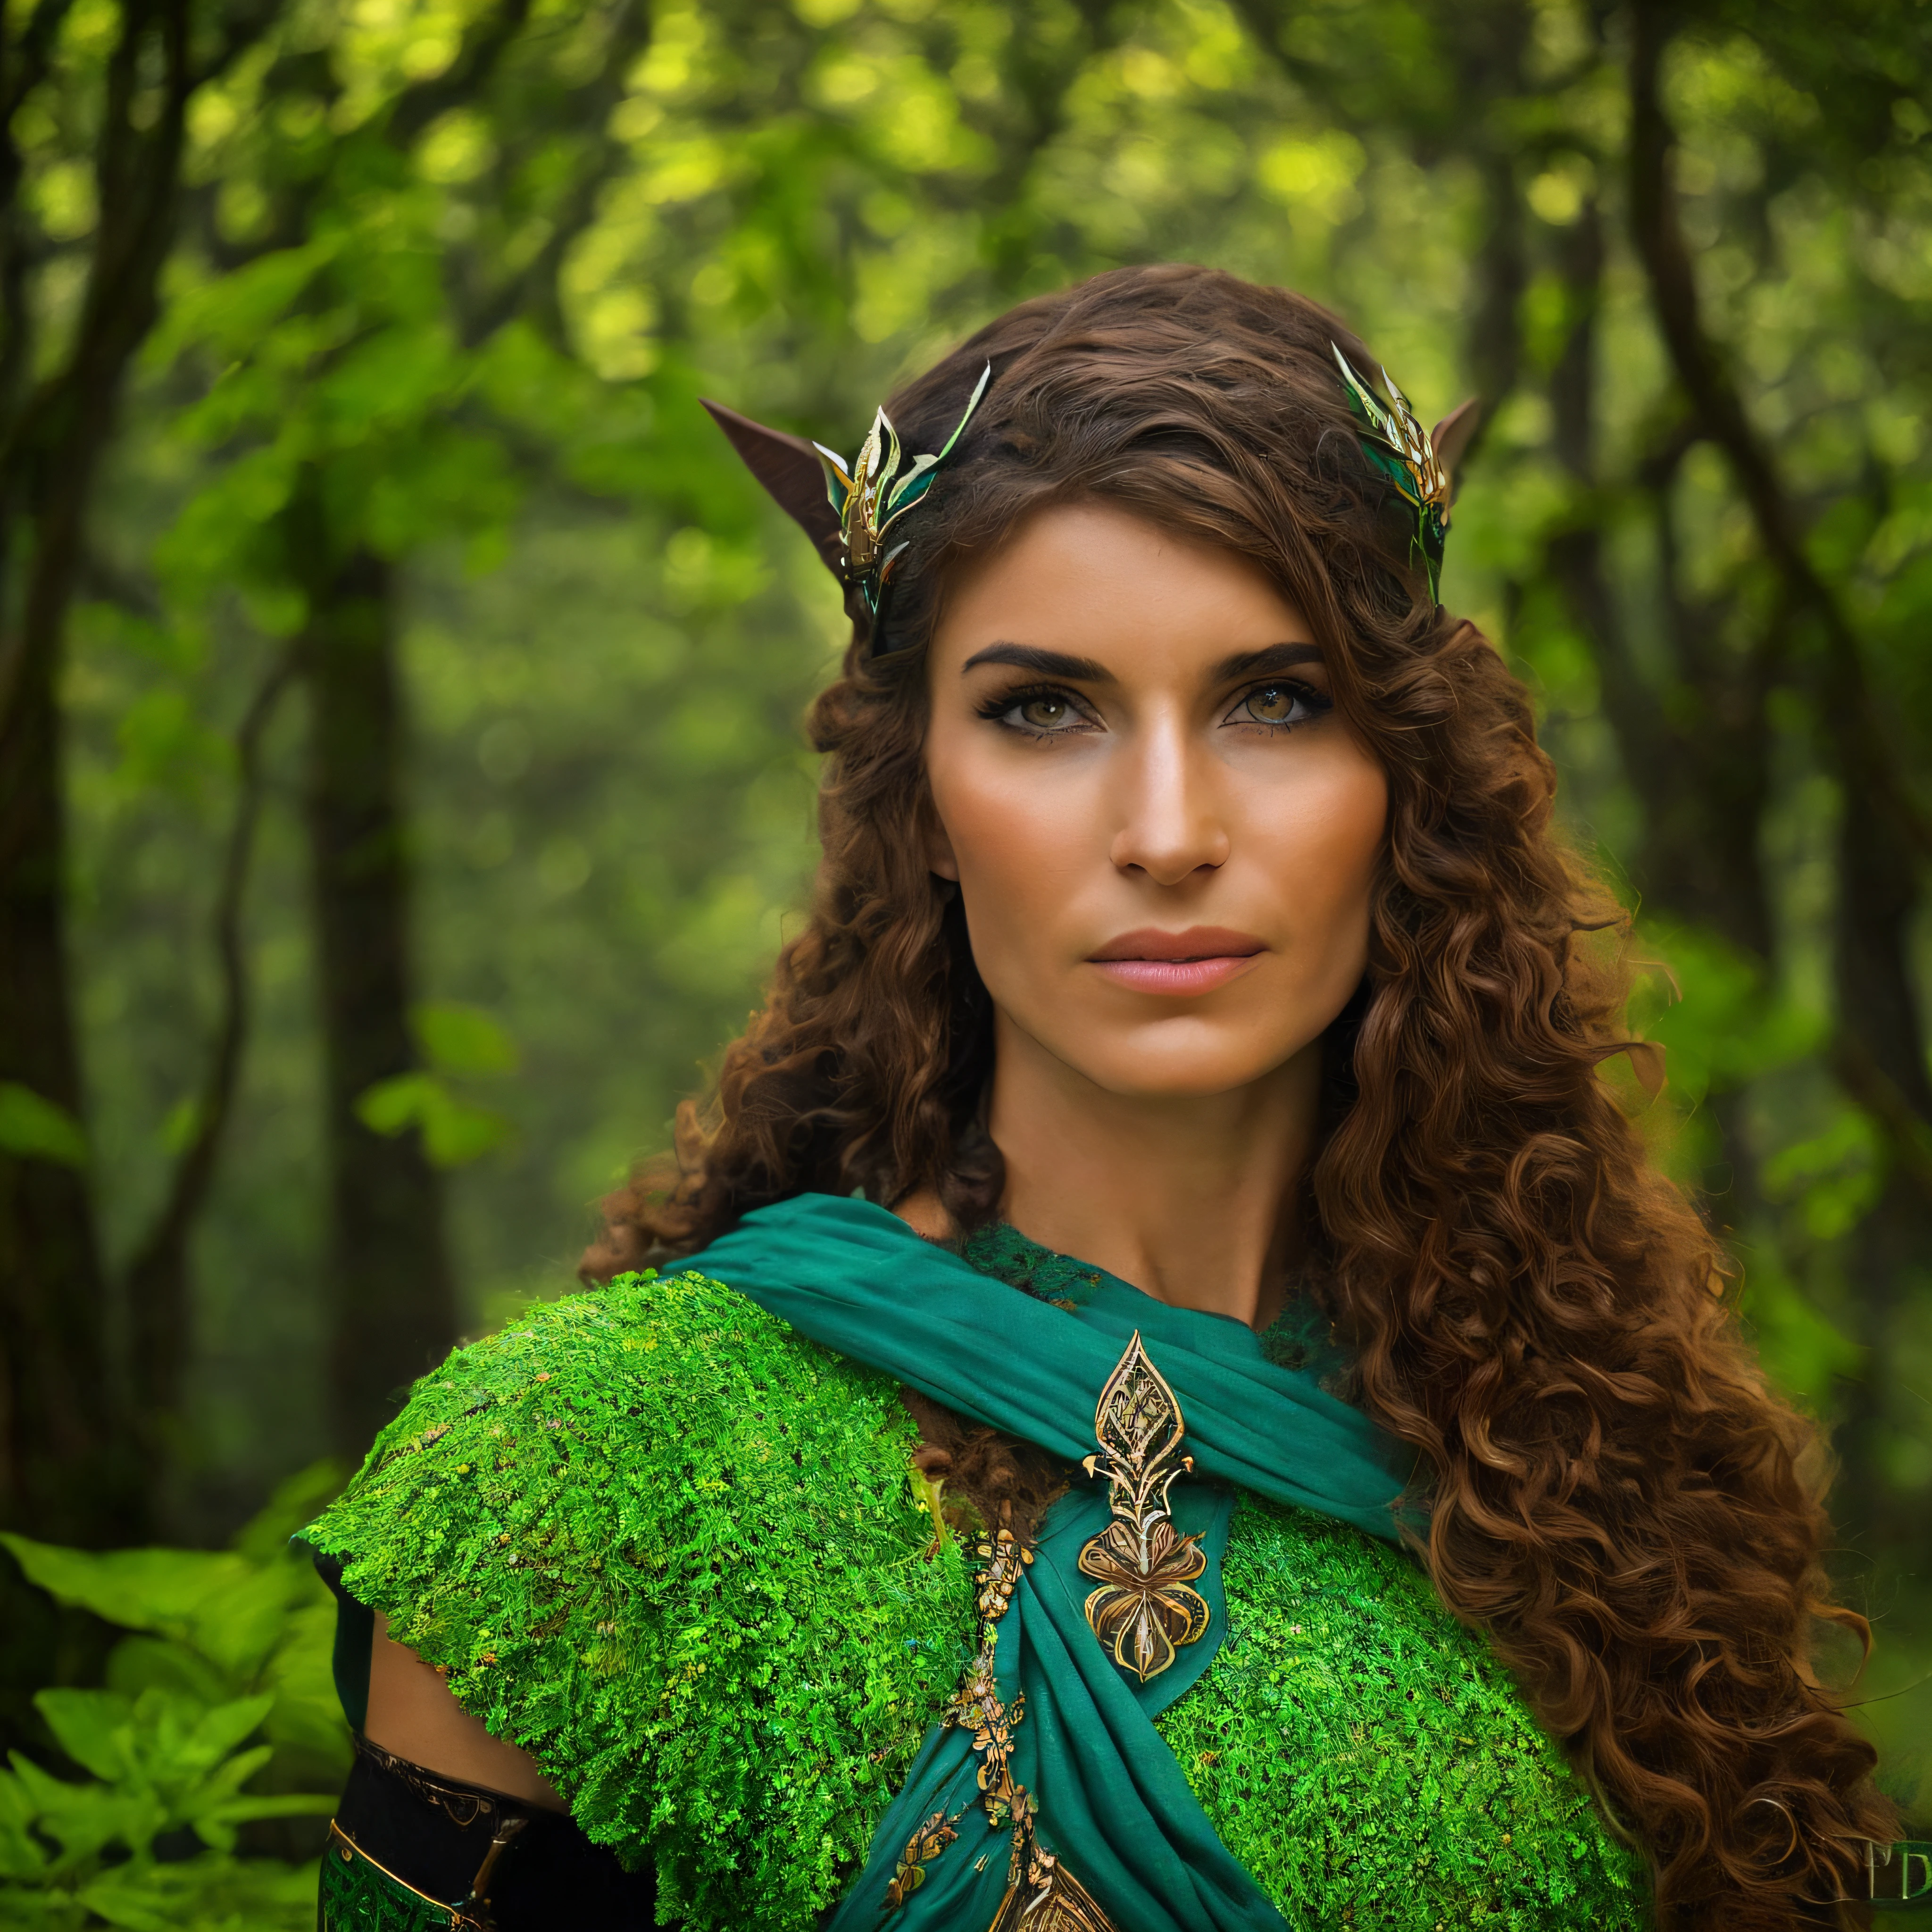 とても美しい女性, 笑顔, 小さなケルト衣装, 夜明け、森の真ん中の茂みの近くに座っているバイキングの戦士, 植物は緑で、光は木々の葉の間を通り抜けます, 柔らかい霧が周囲を覆う, 黒い服, 全身にケルト族のタトゥー. カラフル, 二次元,